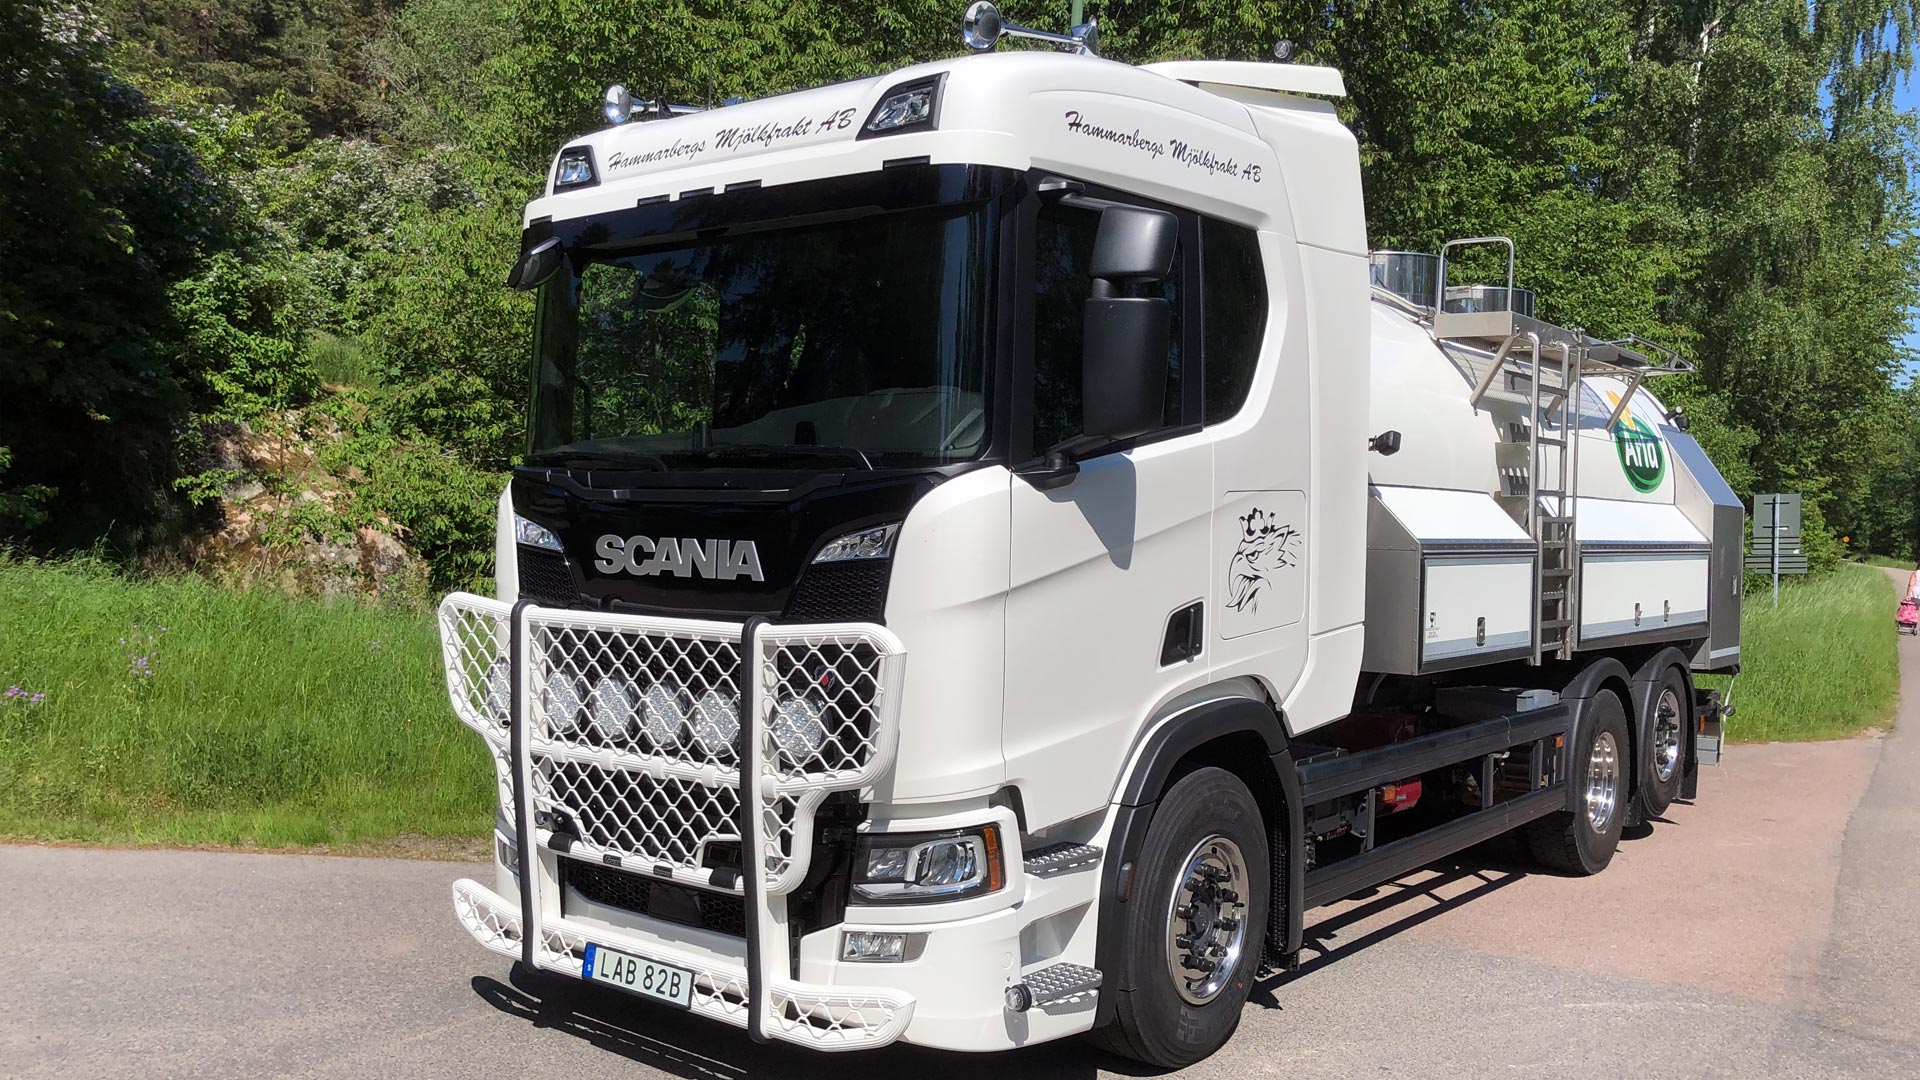 Ny Scanialastbil är levererad till JH’s mjölkfrakt AB.